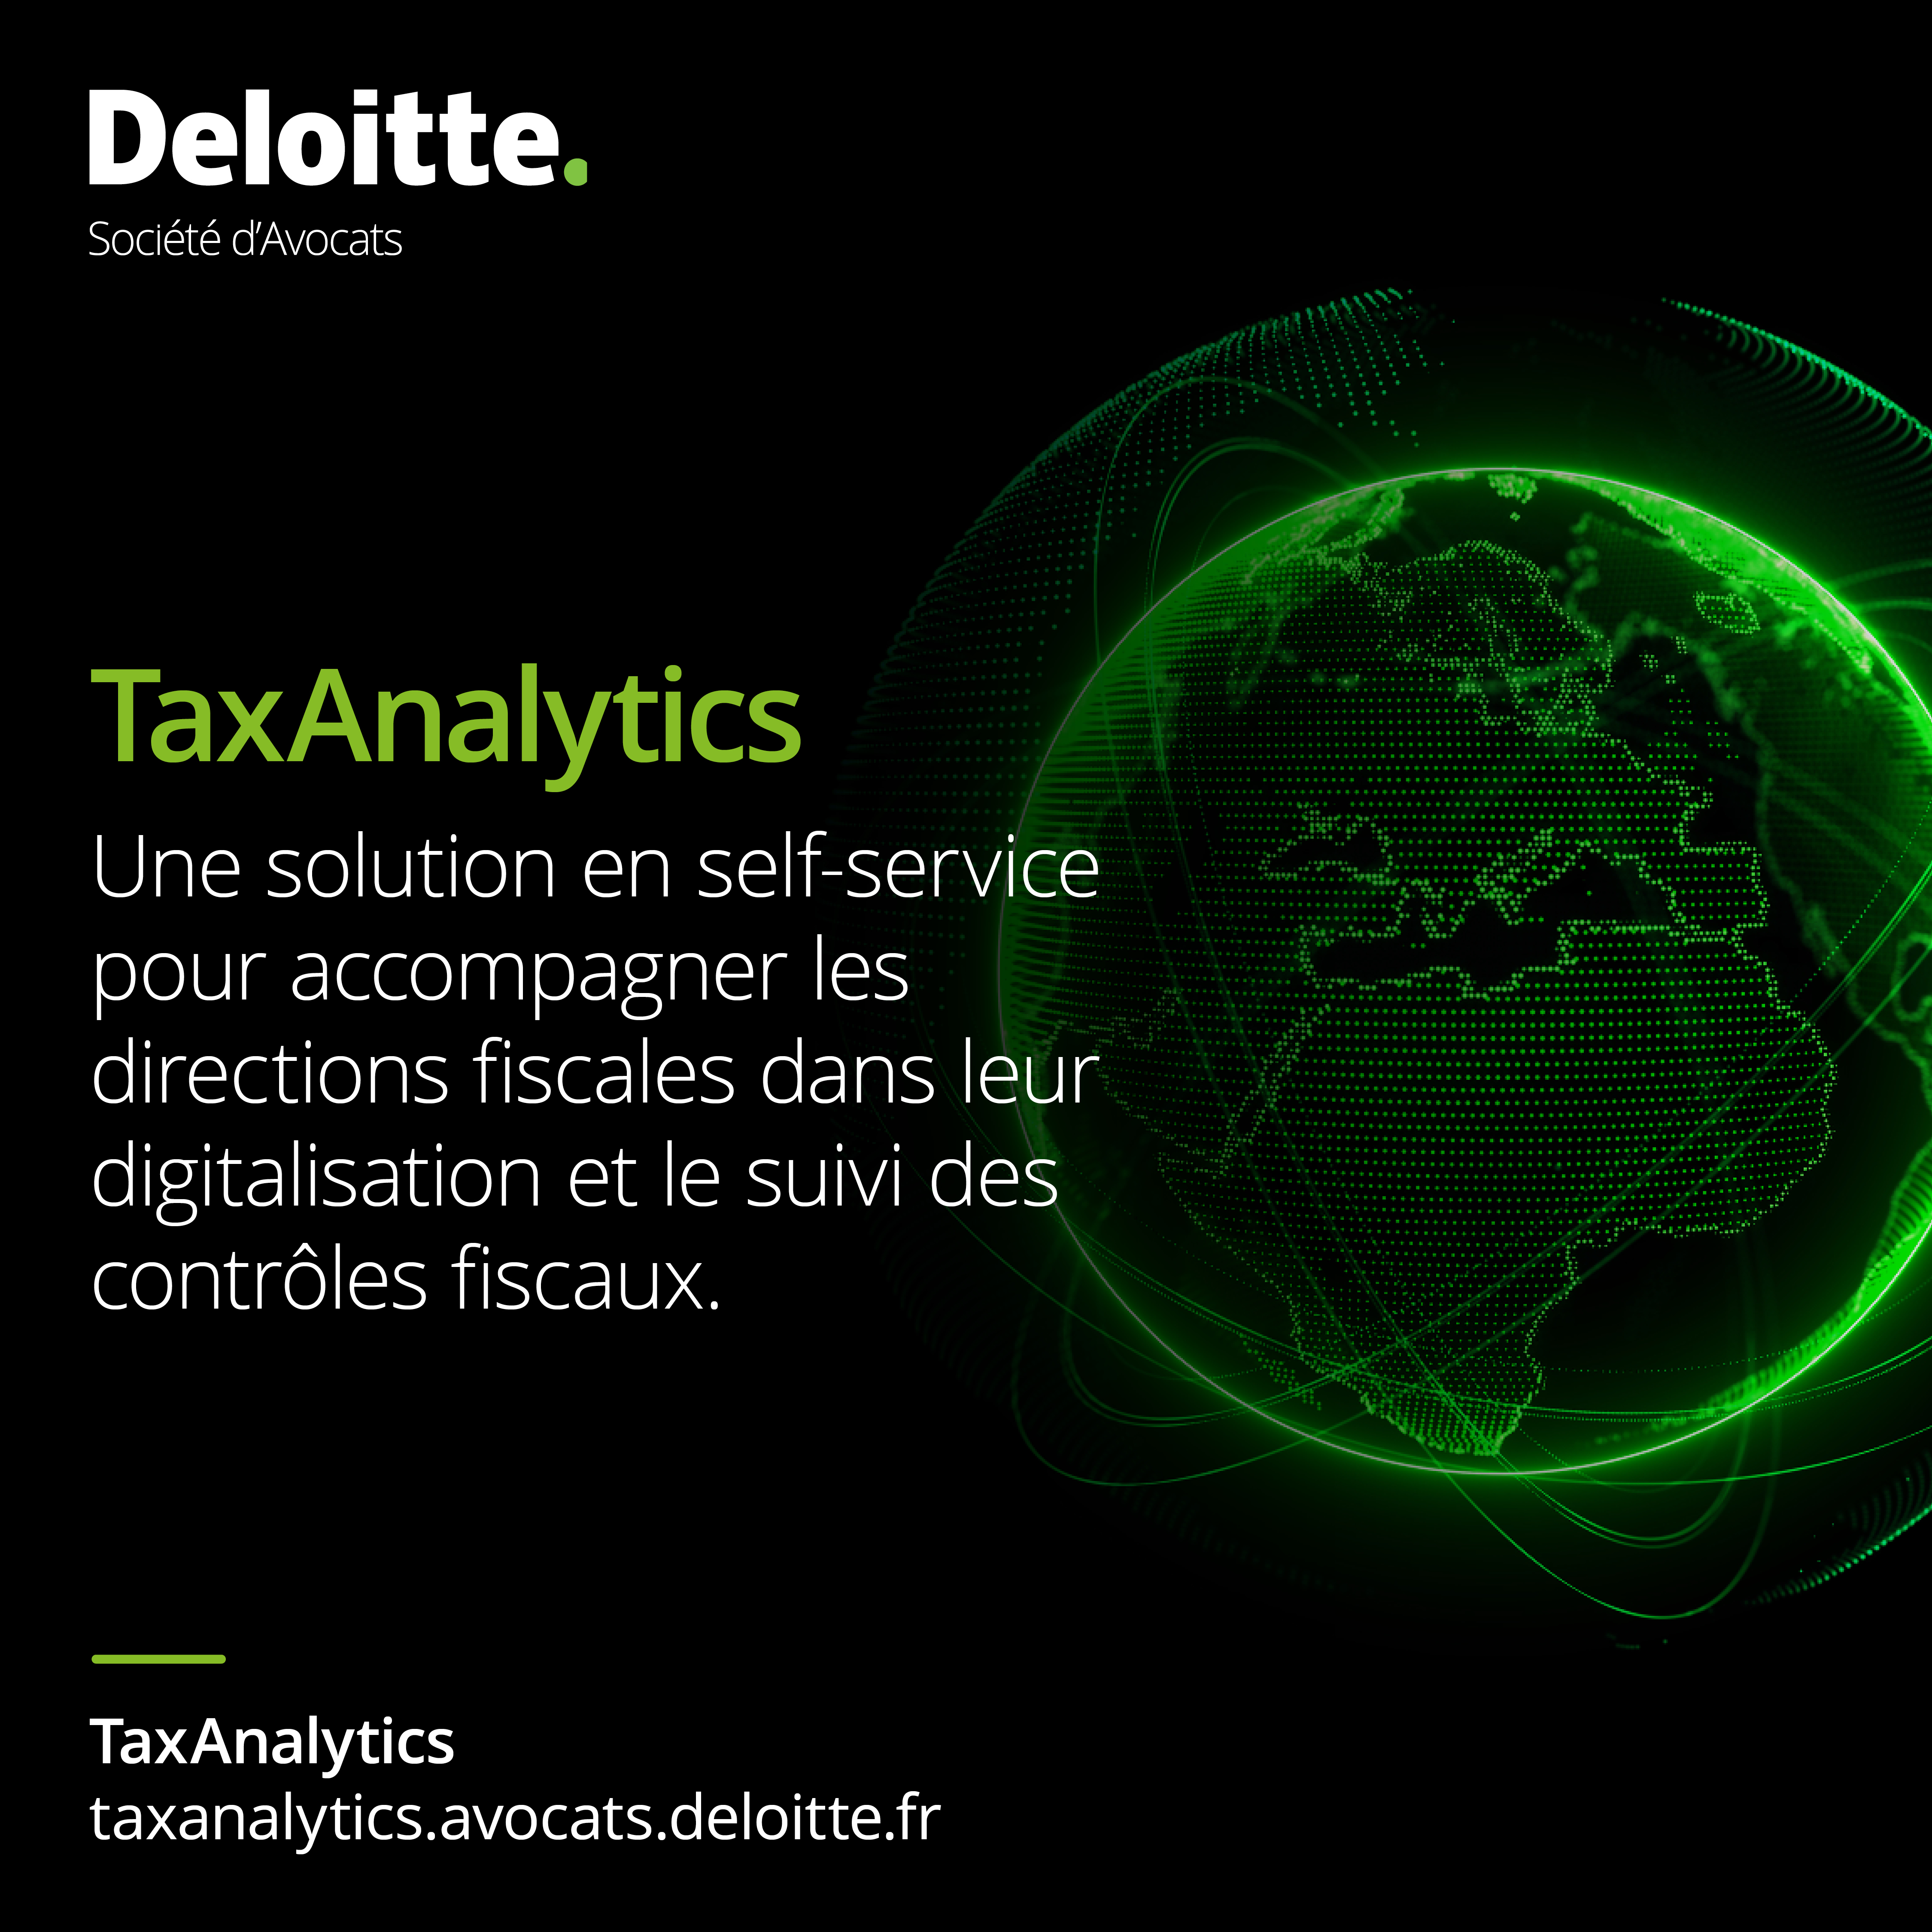 TaxAnalytics, une solution en self-service pour accompagner les directions fiscales dans leur digitalisation et le suivi des contrôles fiscaux.